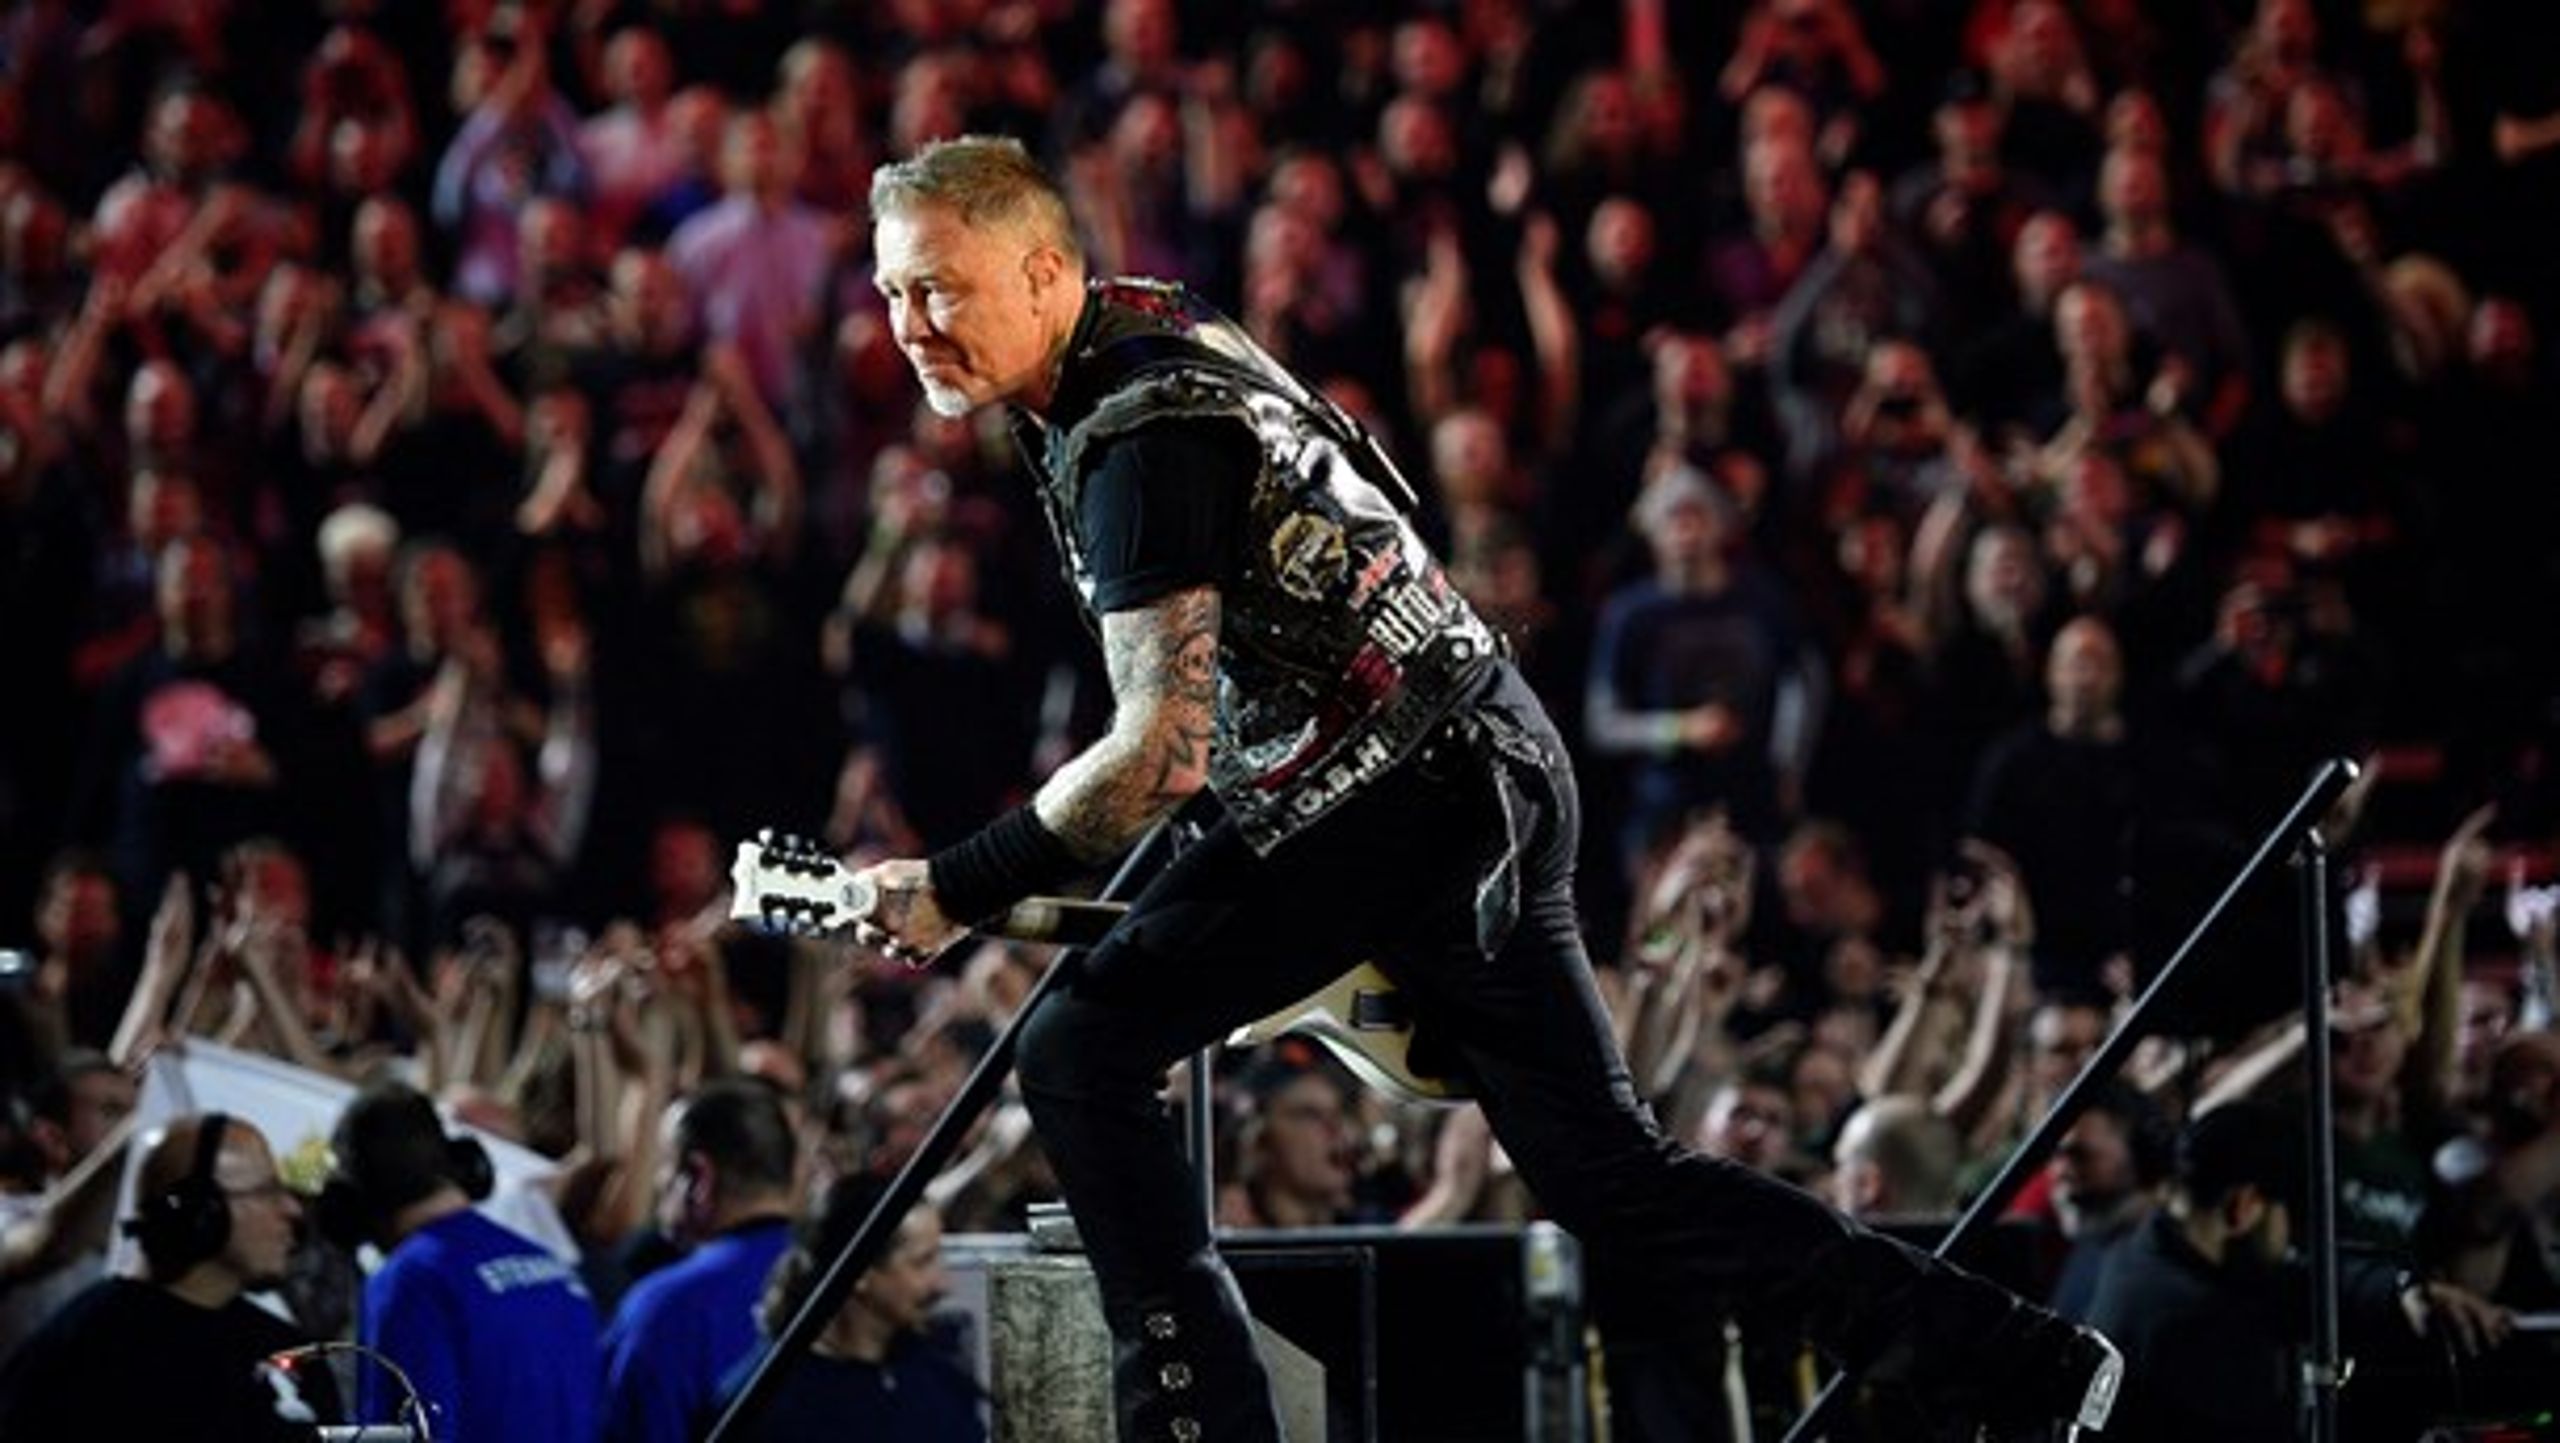 Flere koncerter - som bl.a. denne Metallica-koncert i Royal Arena - har bidraget til, at Koda i 2017 nåede rekordhøj omsætning.